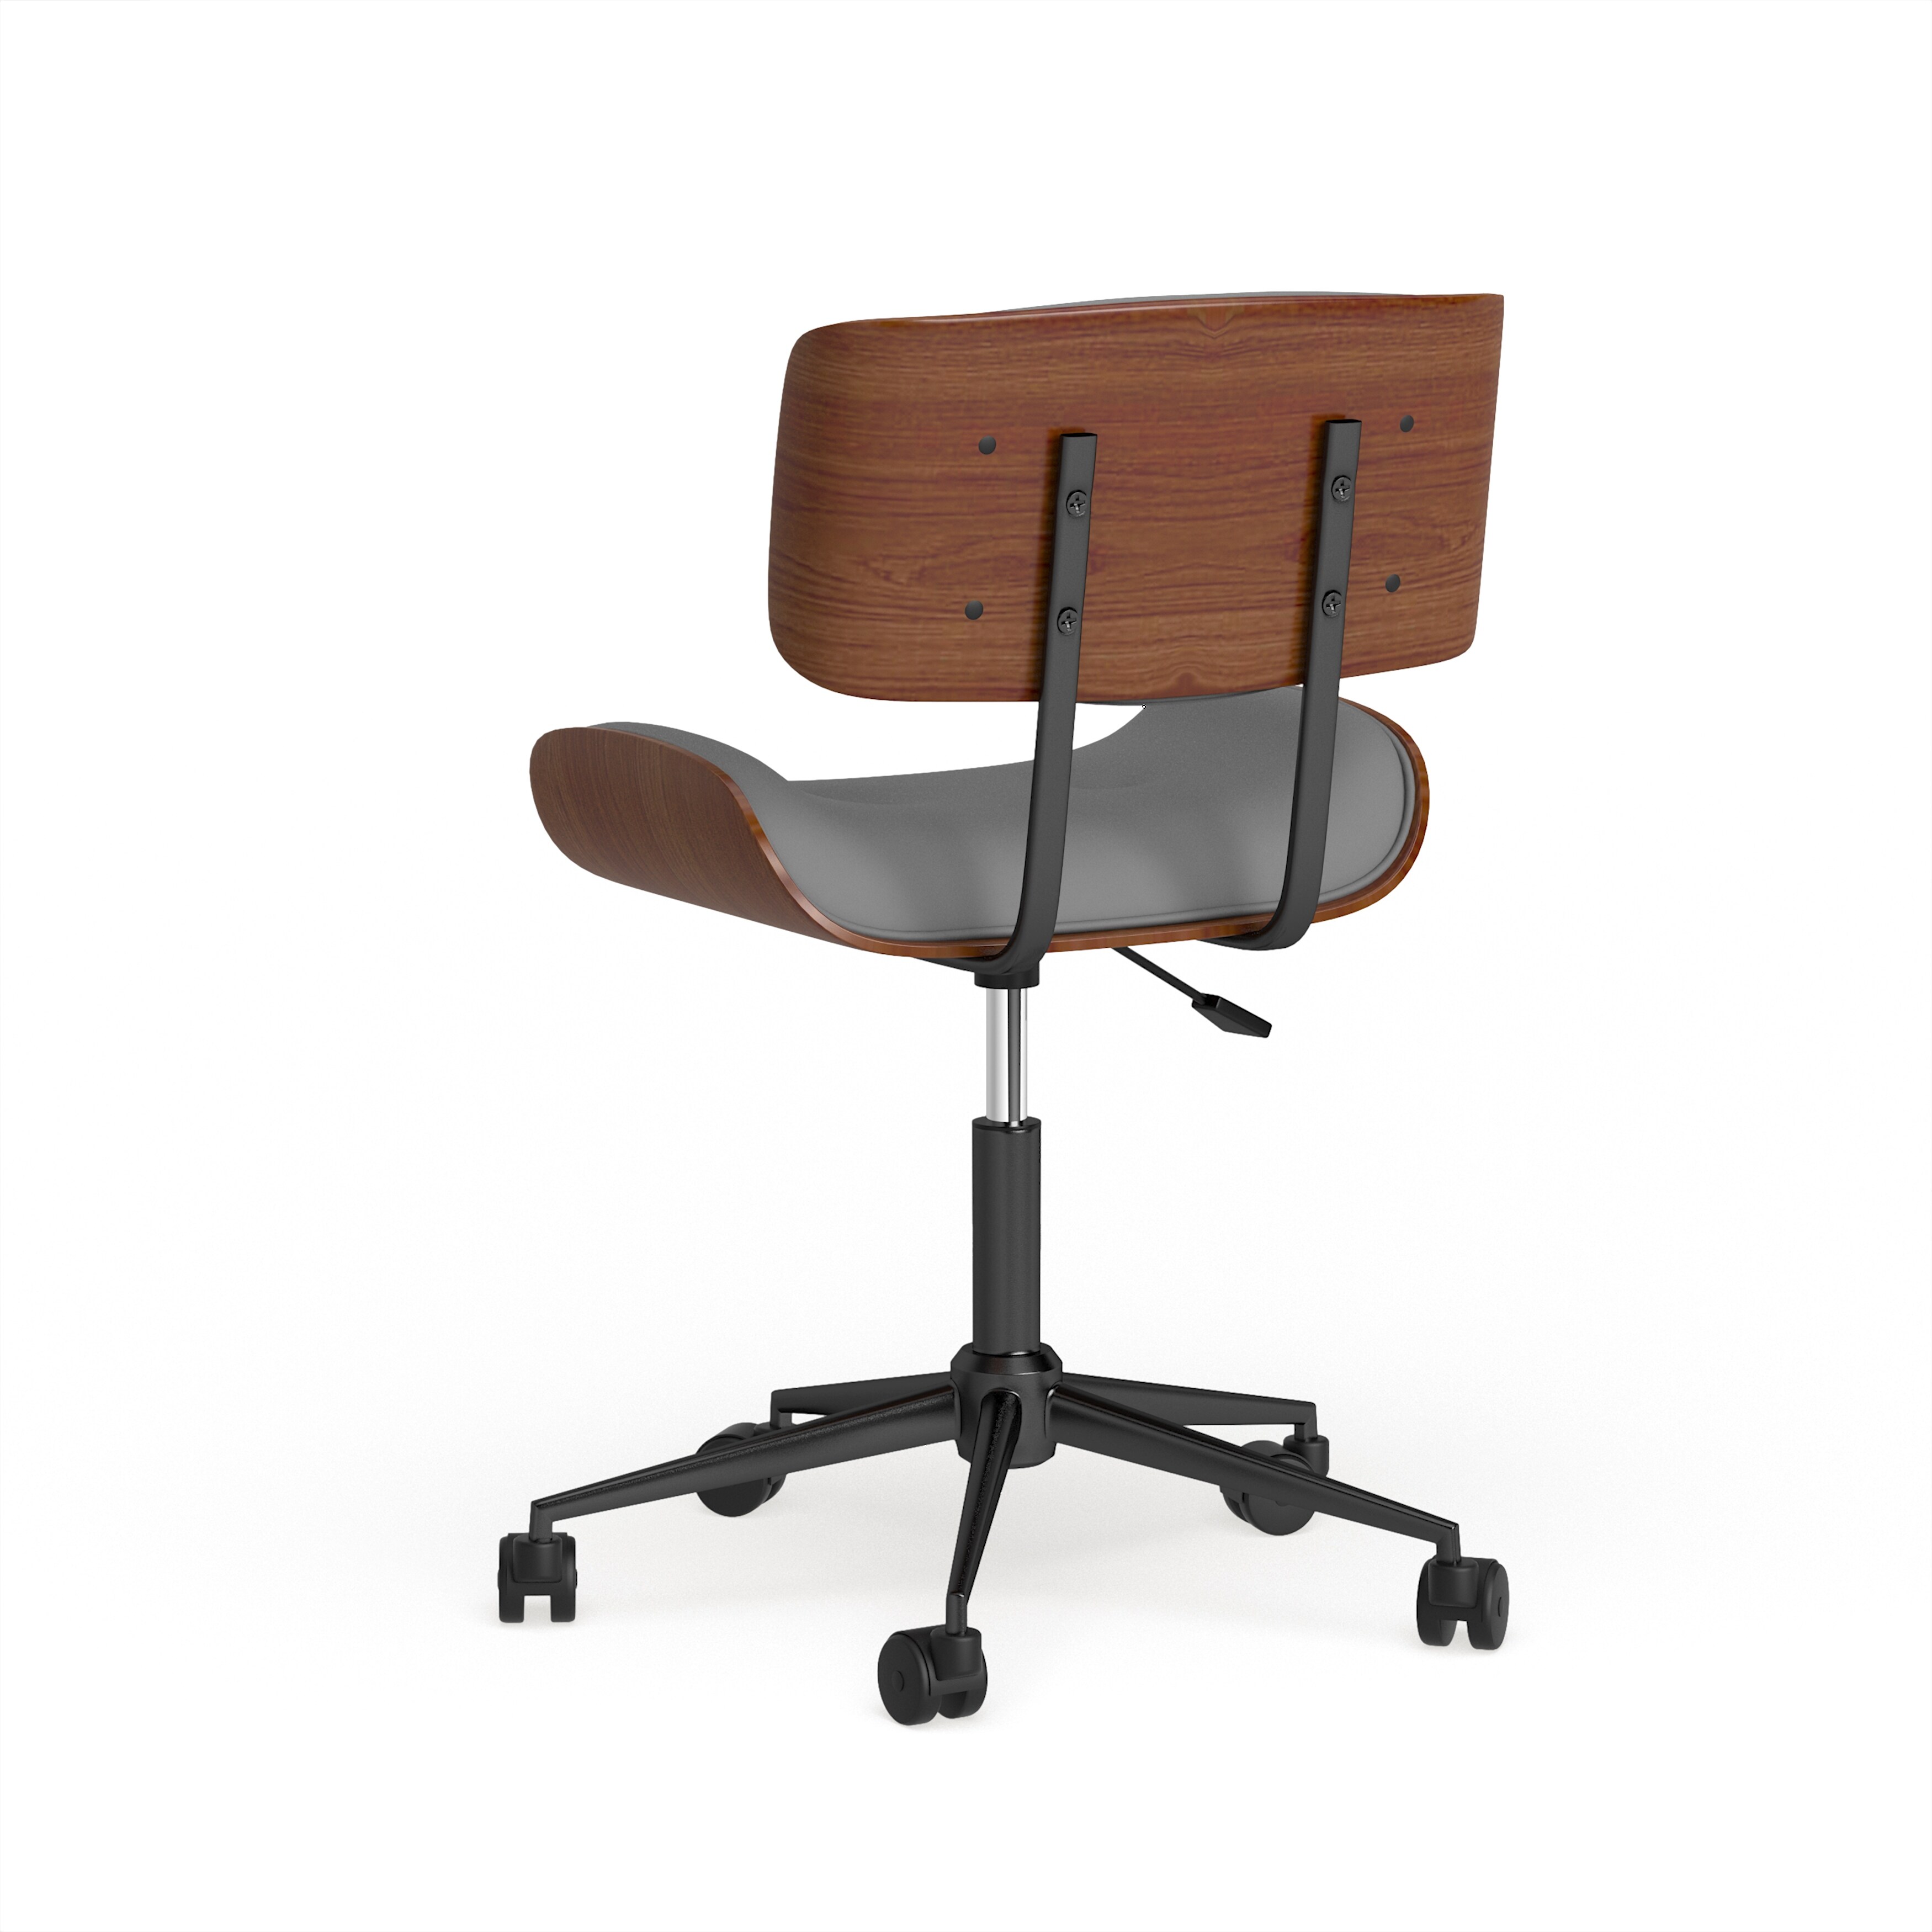 Carson Carrington Leksand Simple Mid-century Modern Office Chair